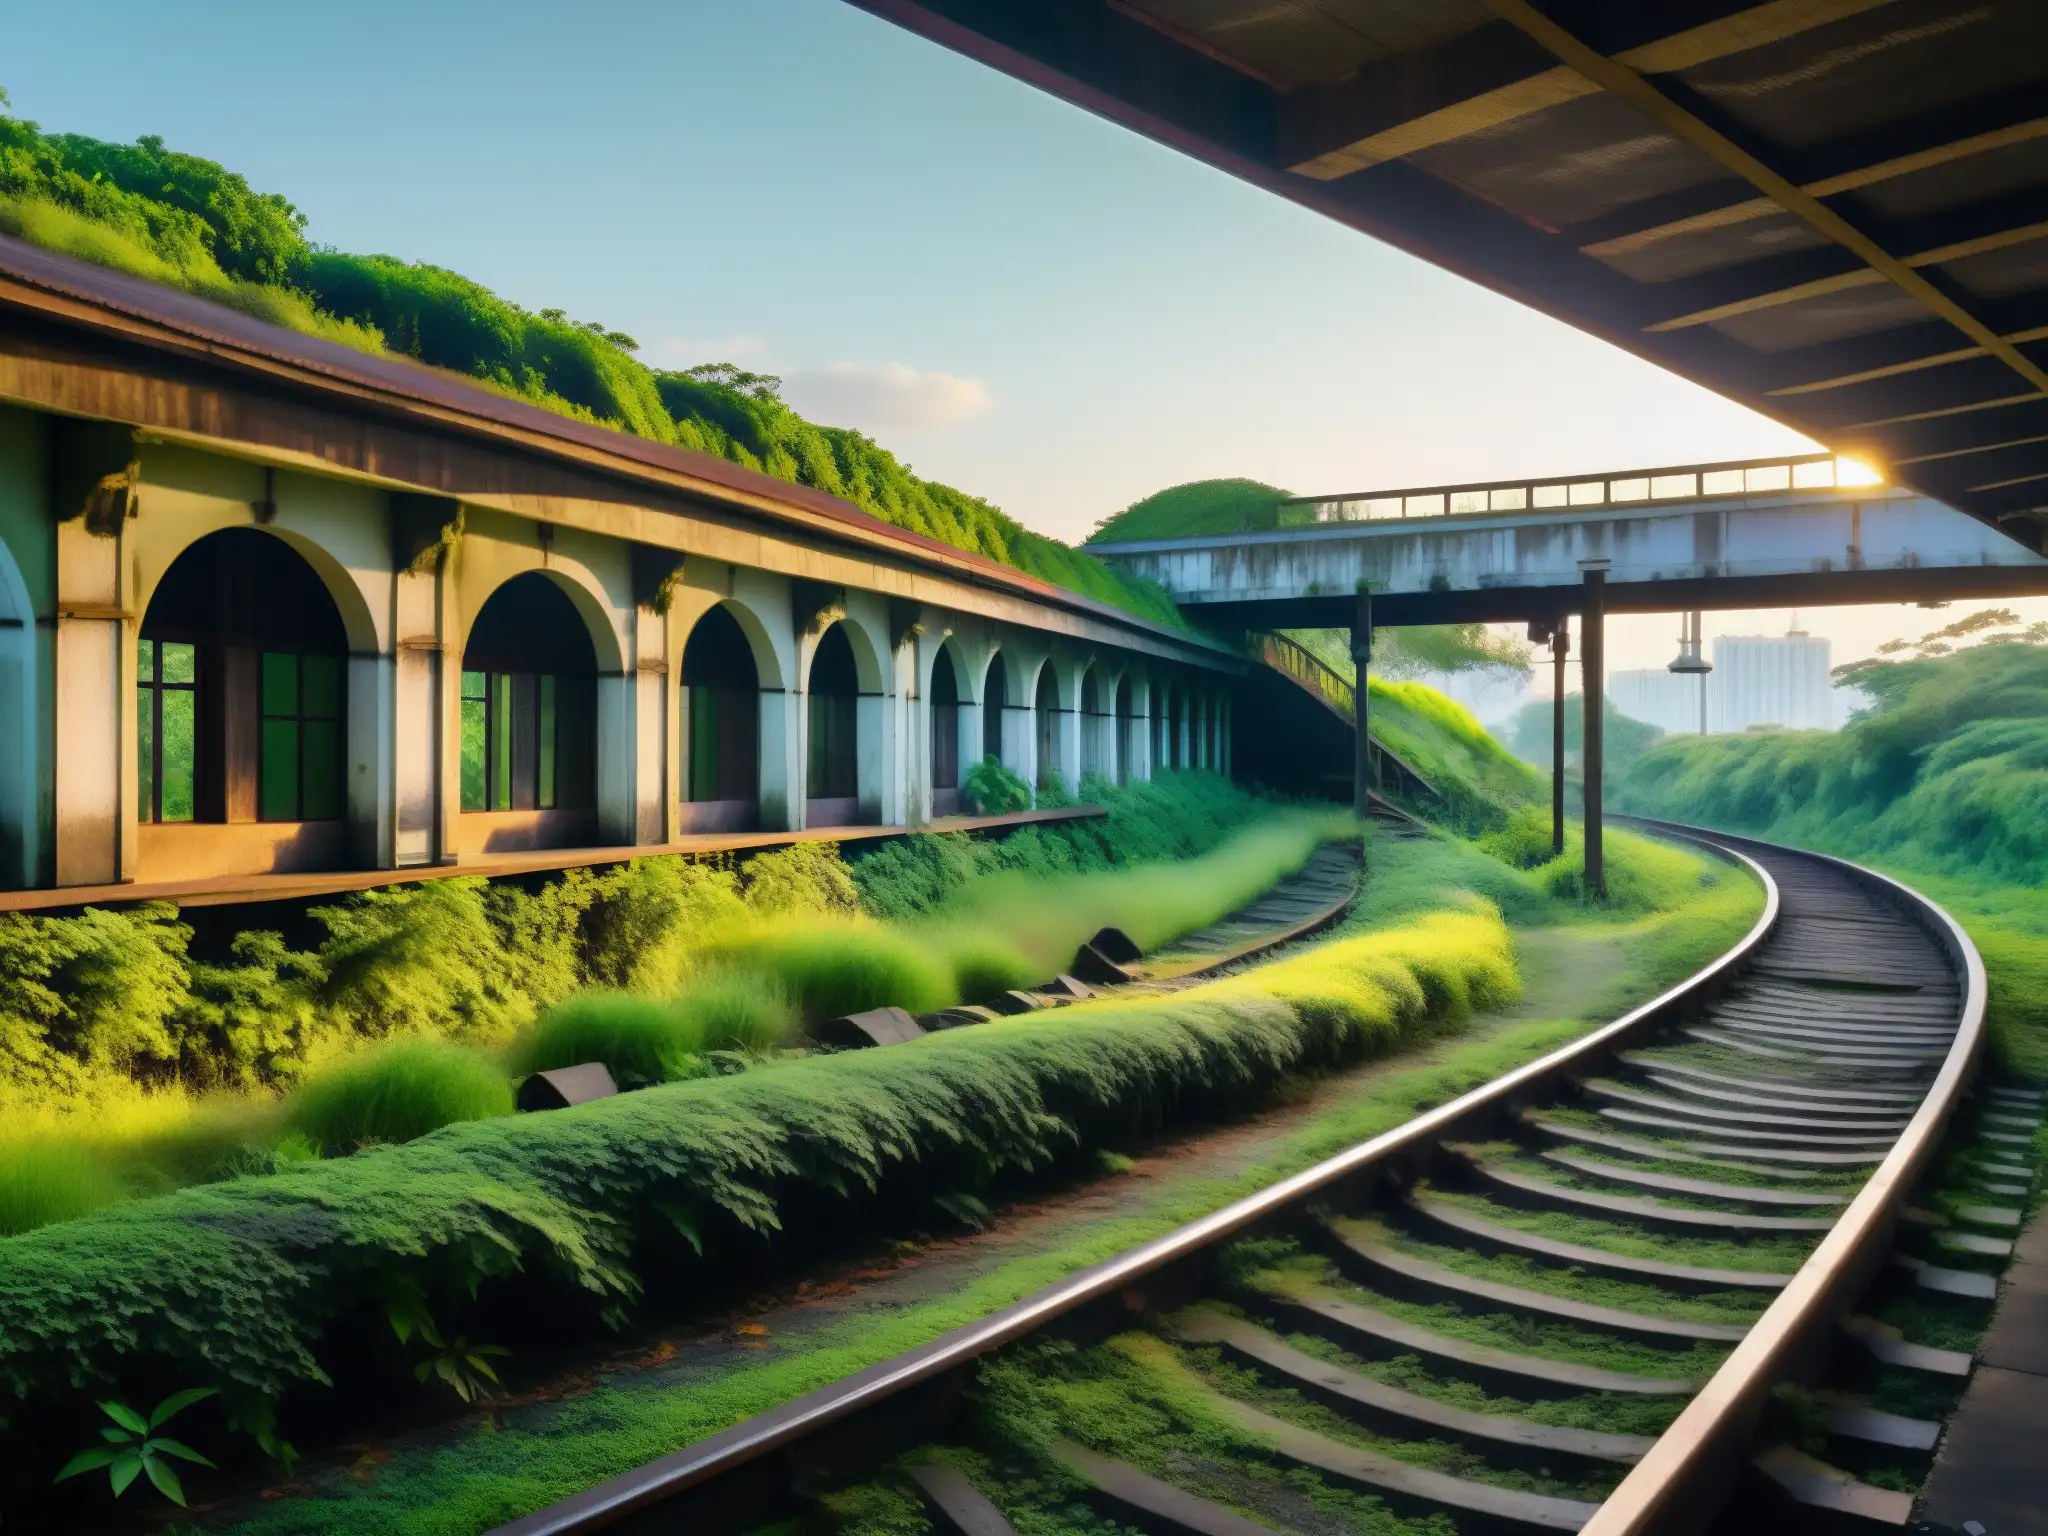 Imagen del misterioso y hermoso Tren Fantasma Bishan, con vías cubiertas de vegetación y una atmósfera evocadora de la leyenda